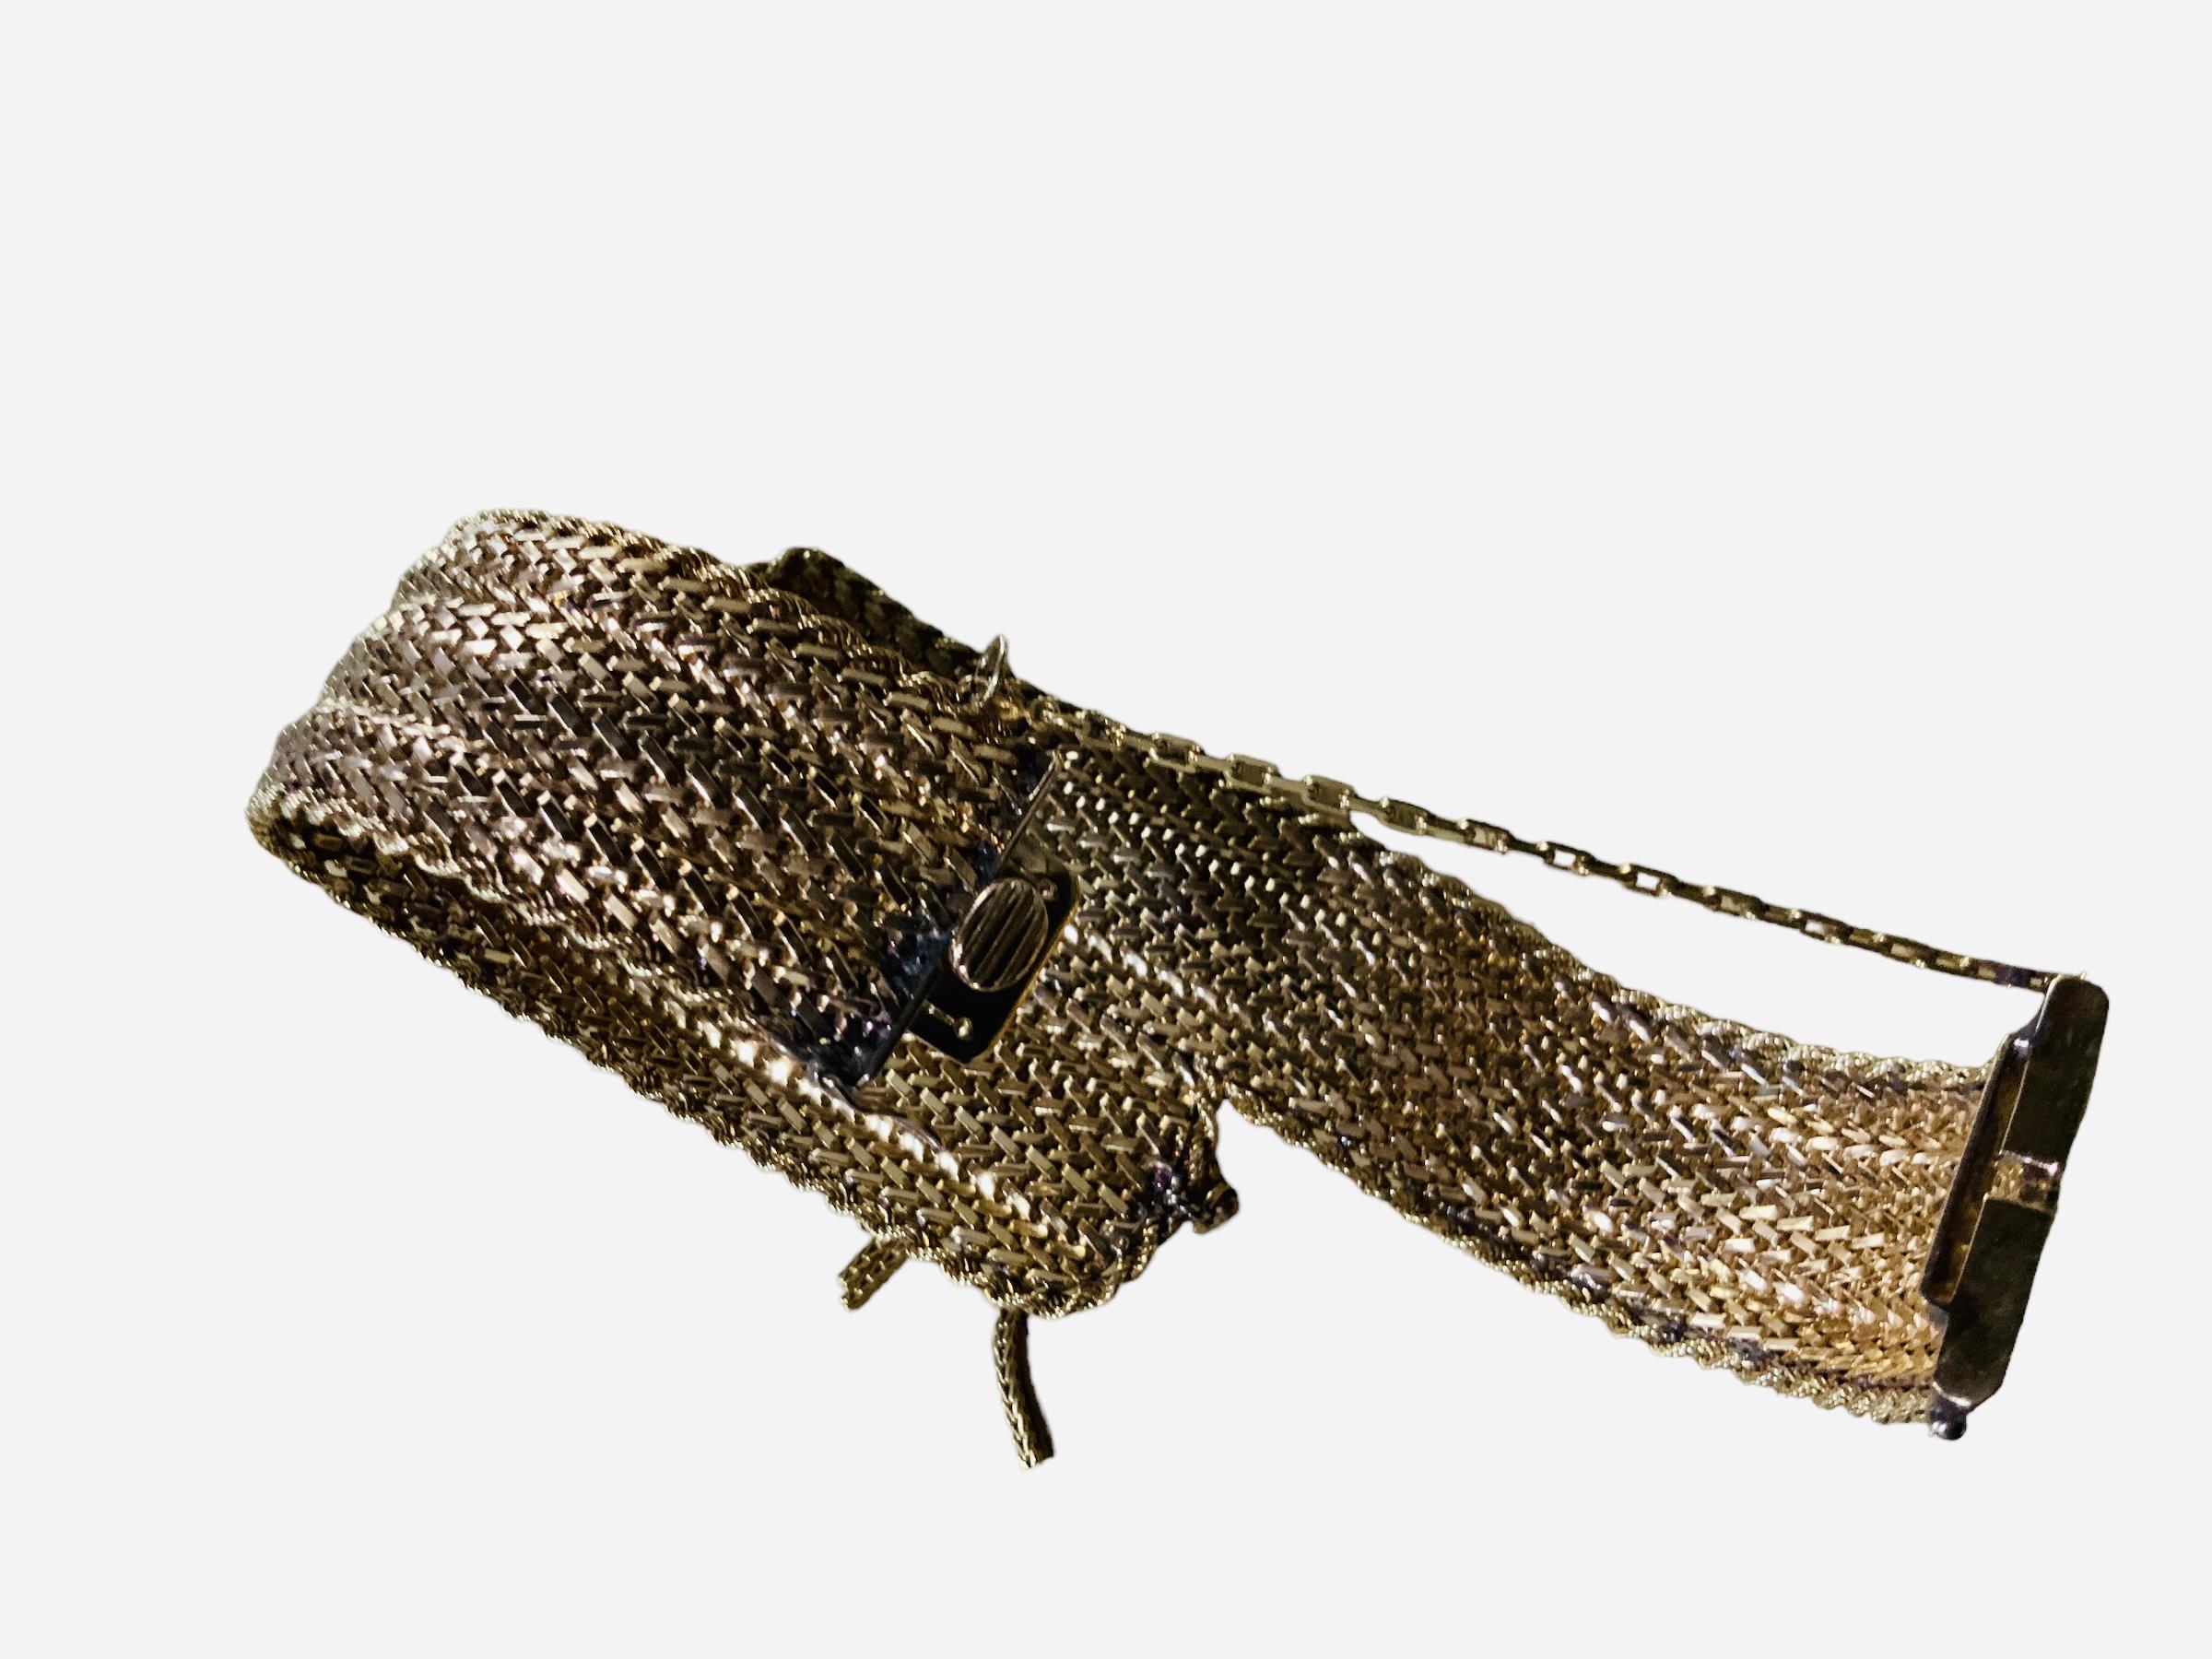 gold mesh bracelet 18k